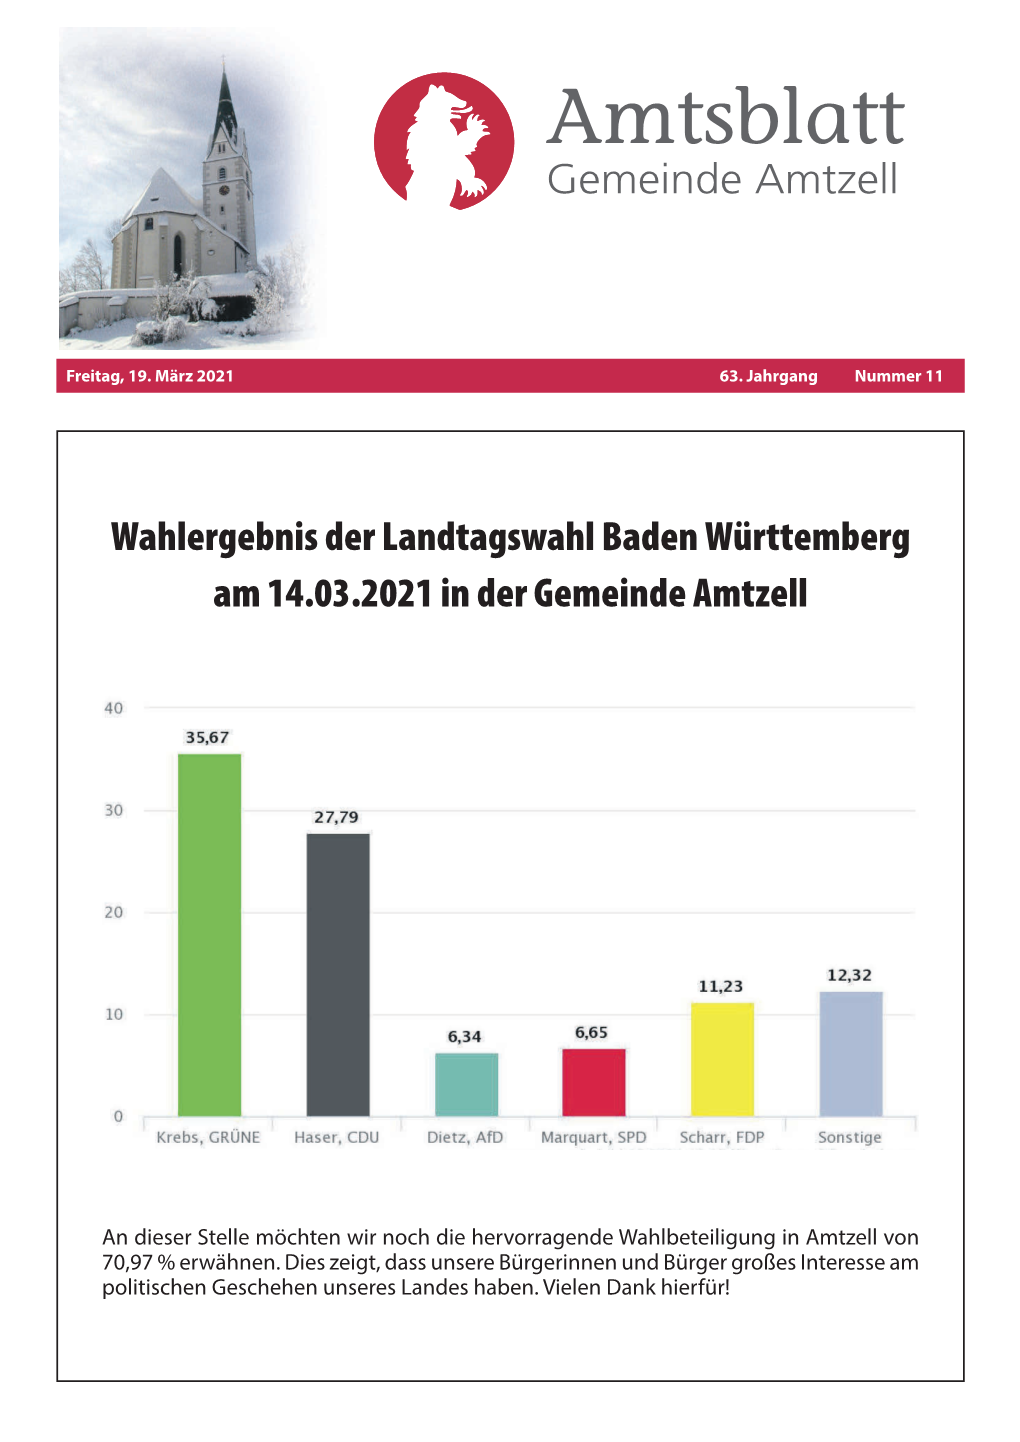 Wahlergebnis Der Landtagswahl Baden Württemberg Am 14.03.2021 in Der Gemeinde Amtzell